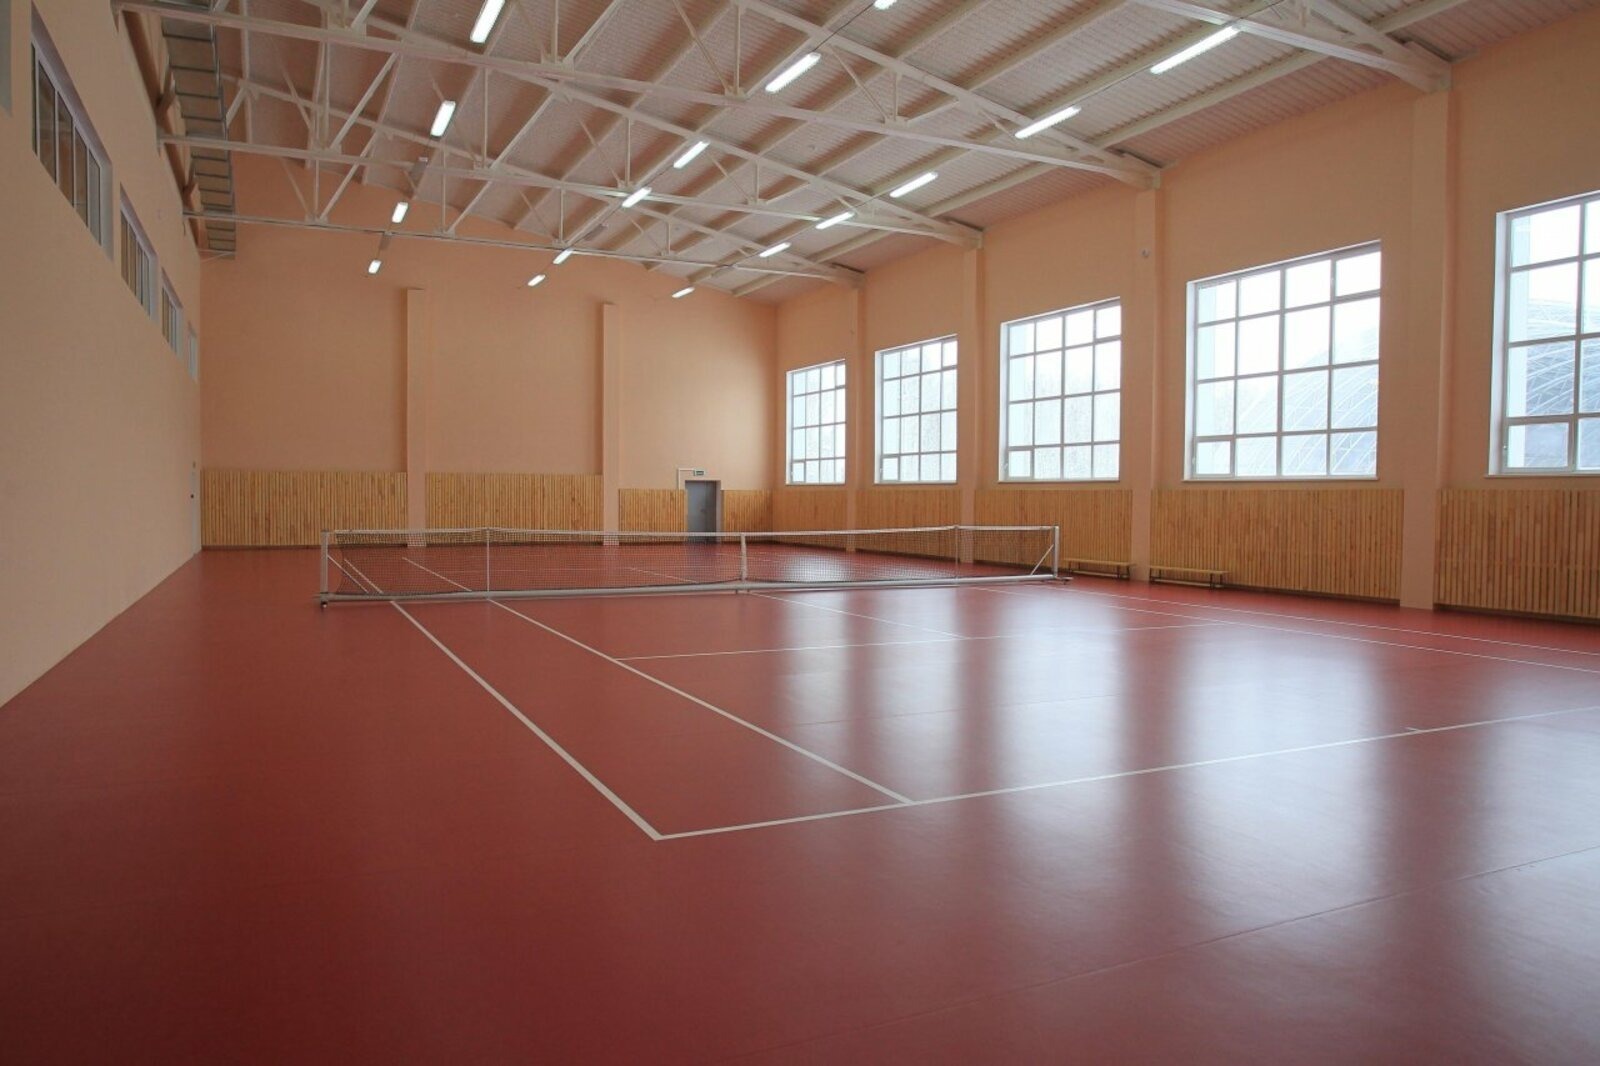 Жителям Башкирии разрешили заниматься в школьных спортзалах